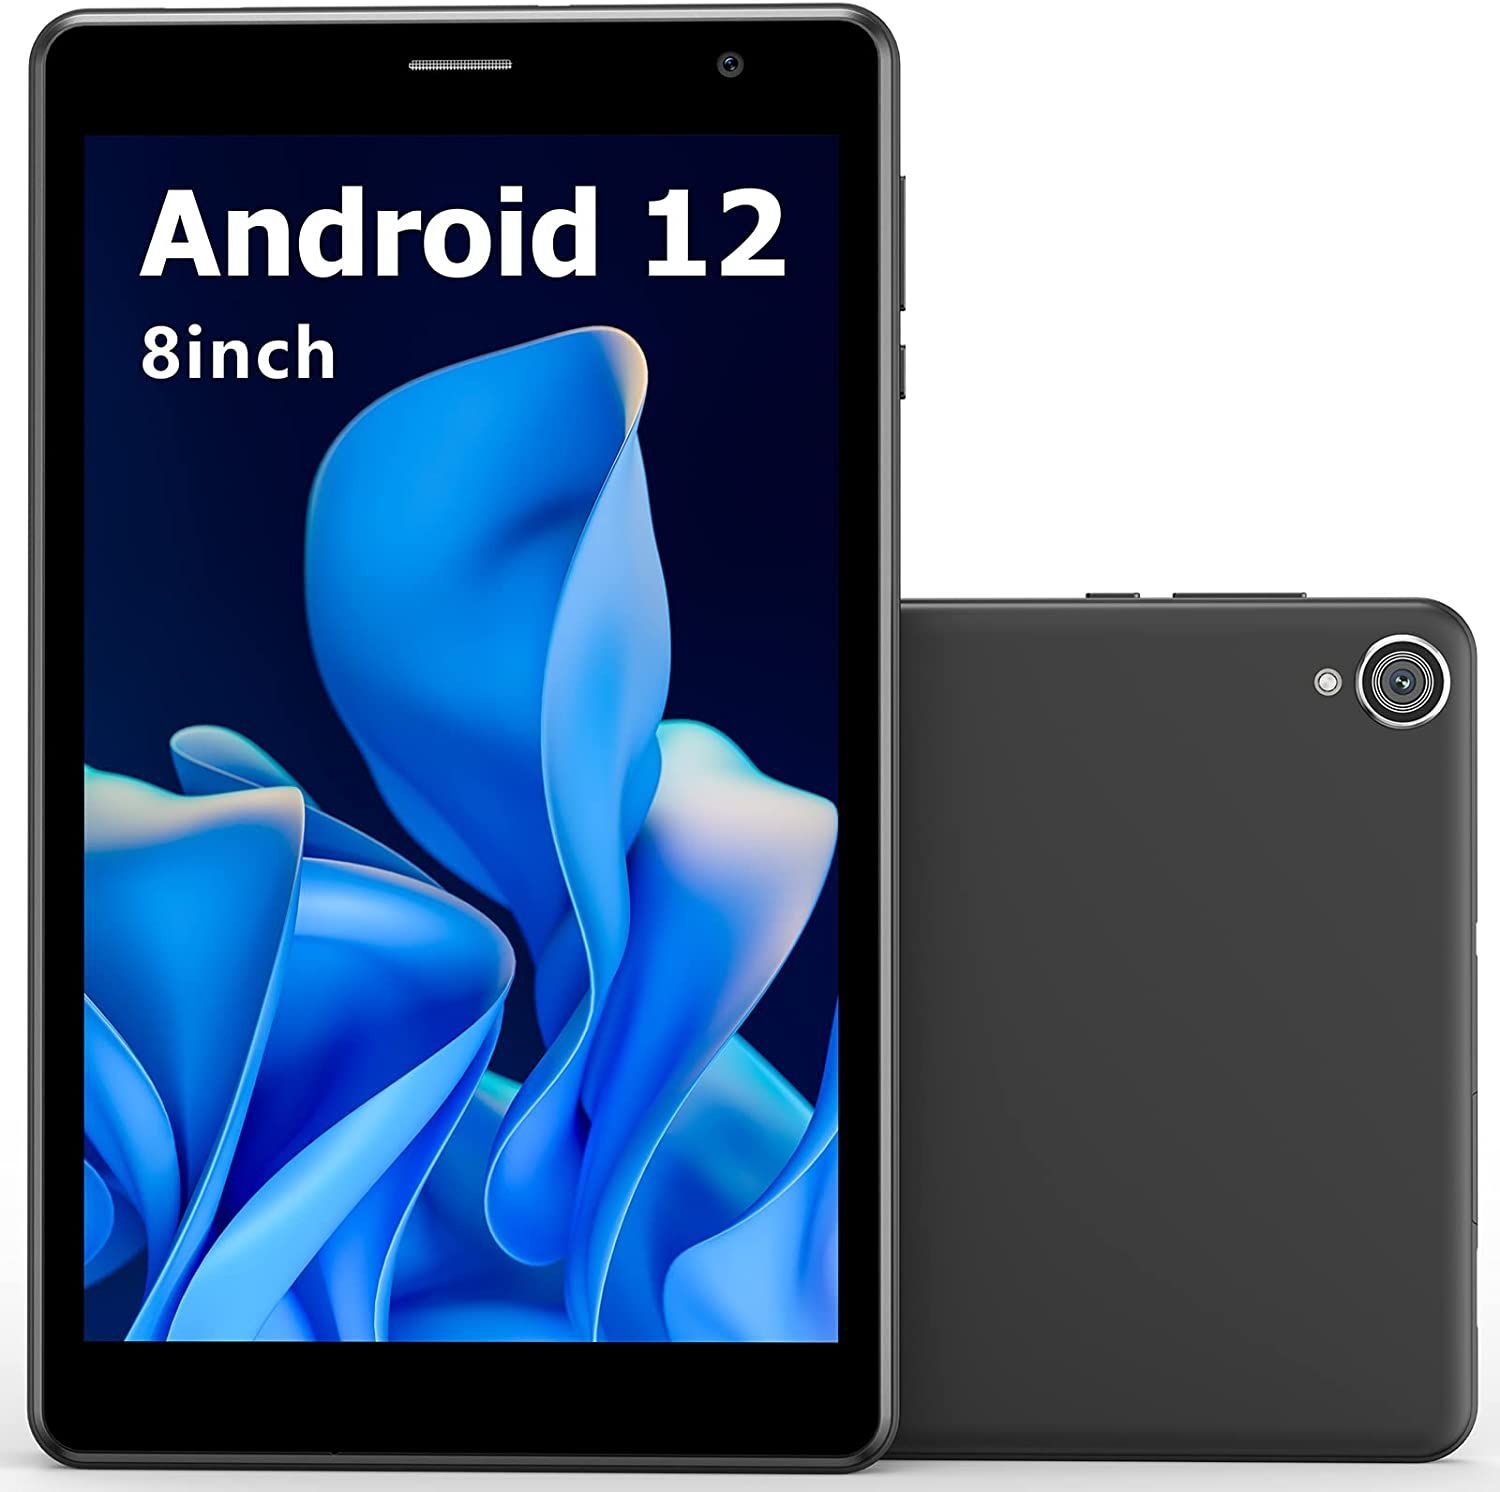 専用ケース付属！✨最新版8インチタブレット✨ UAUU（ユアユー）T30♡ Android12 付属品完備 動作確認済み✨✨✨